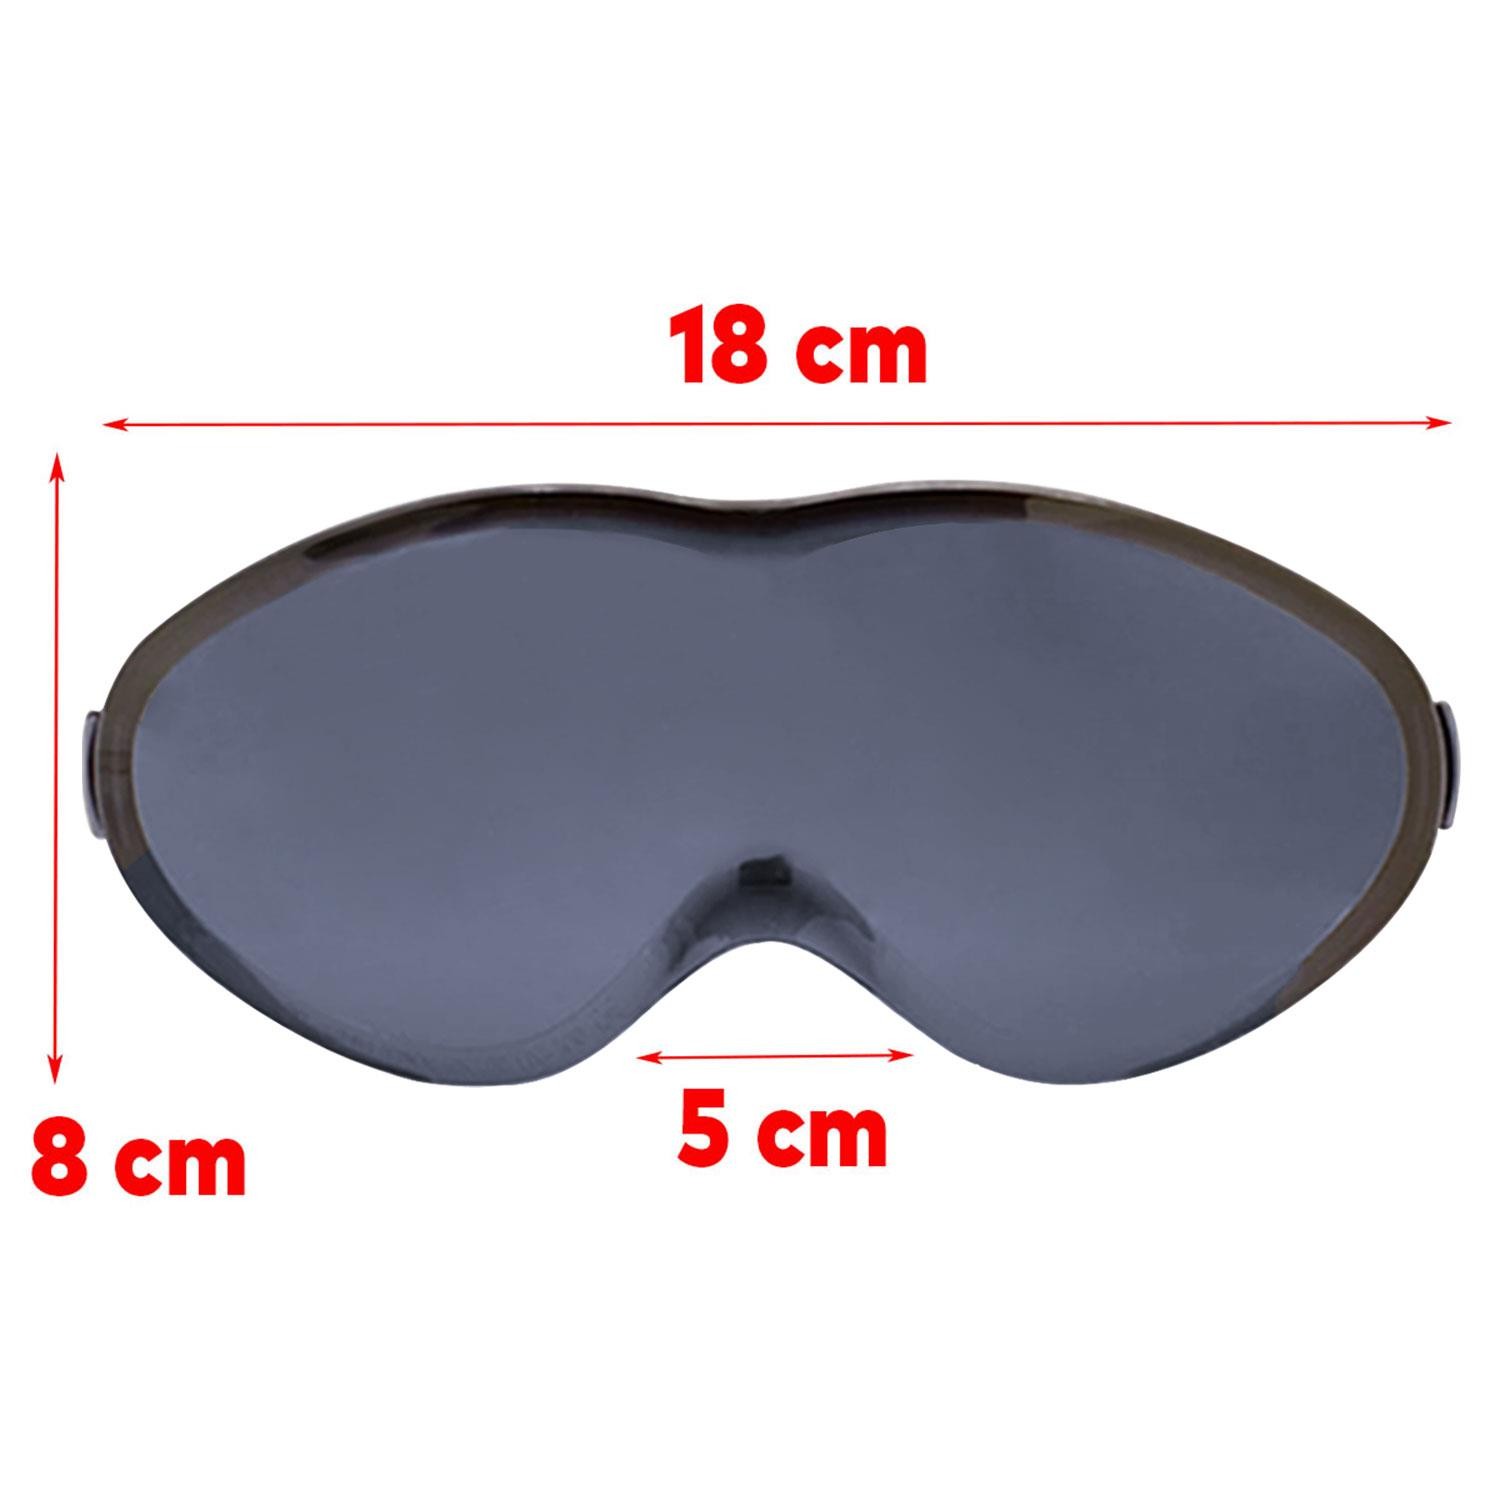 Bellasimo Çerçevesiz Kayak Gözlüğü Camı Lens Değiştirebilir Cam Antifog Güneş Kar Gözlük Camı Füme